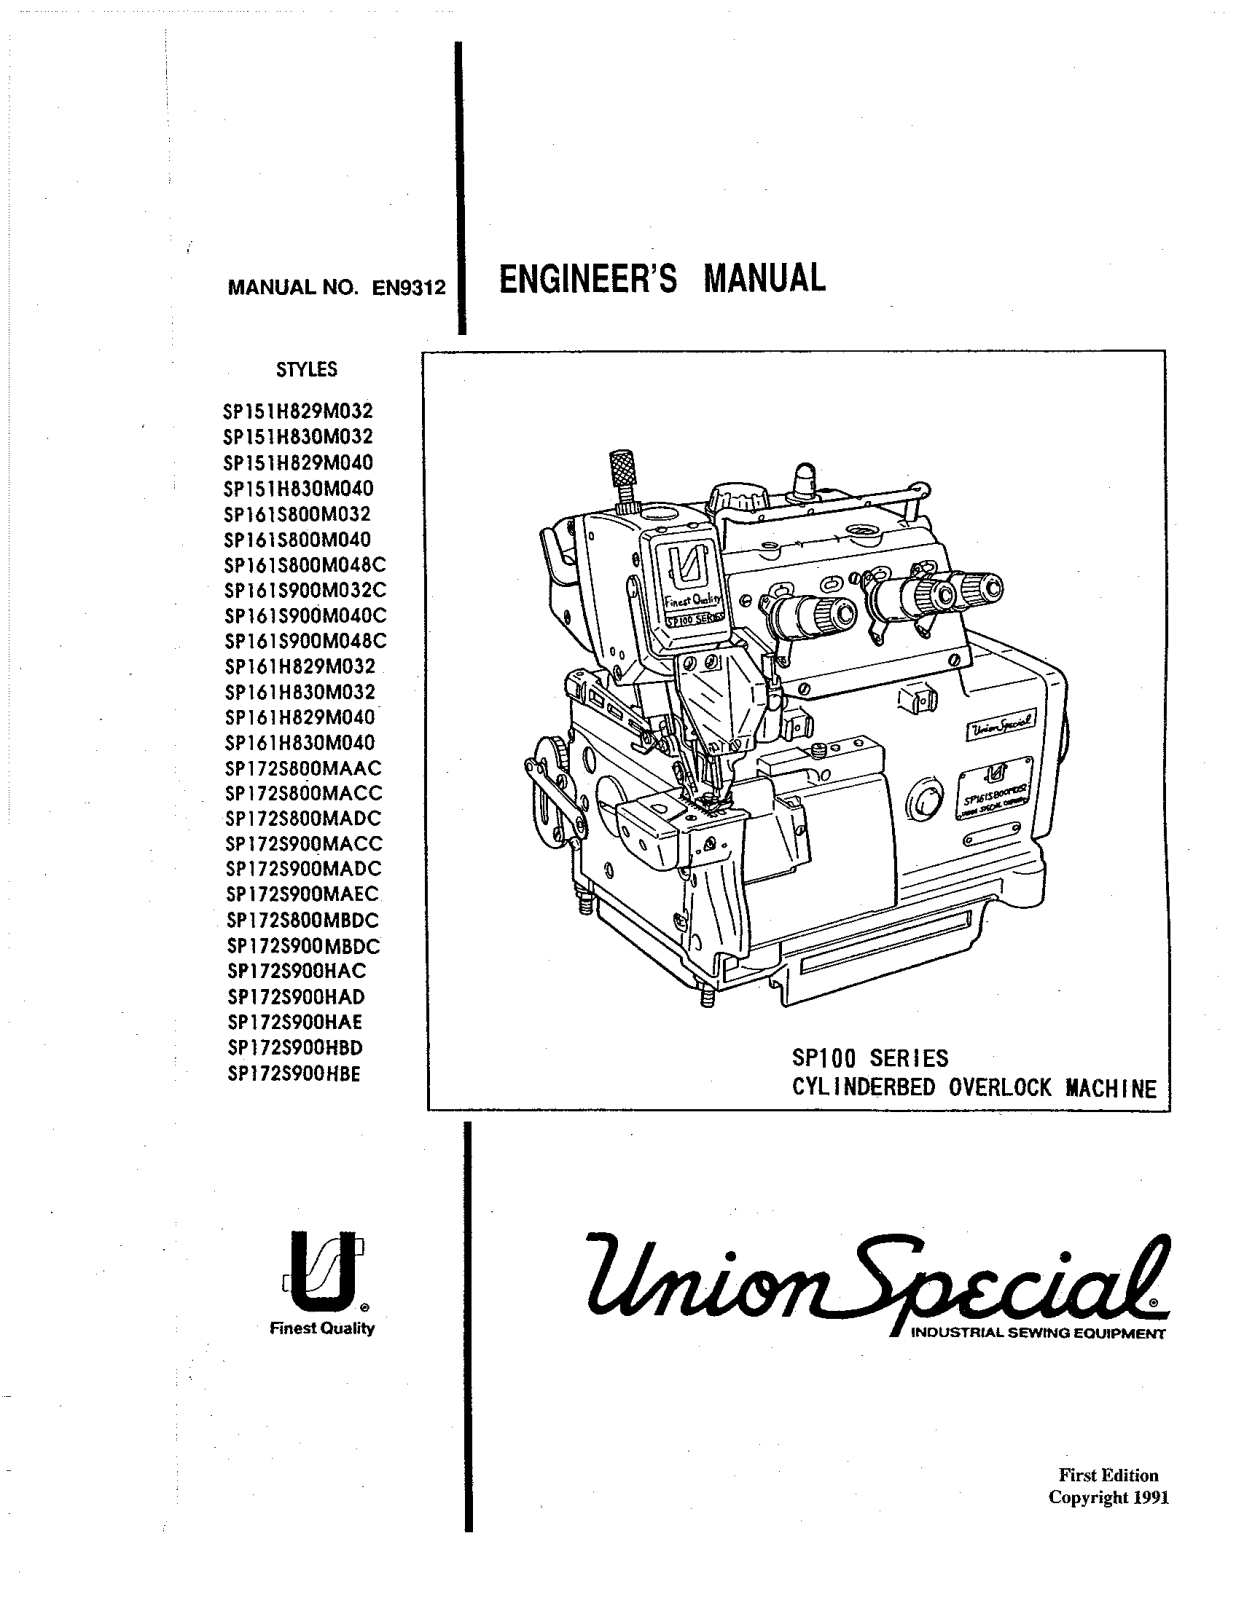 Union Special SP151H829M032, SP151H829M040, SP151H830M032, SP151H830M040, SP161H829M032 Parts List